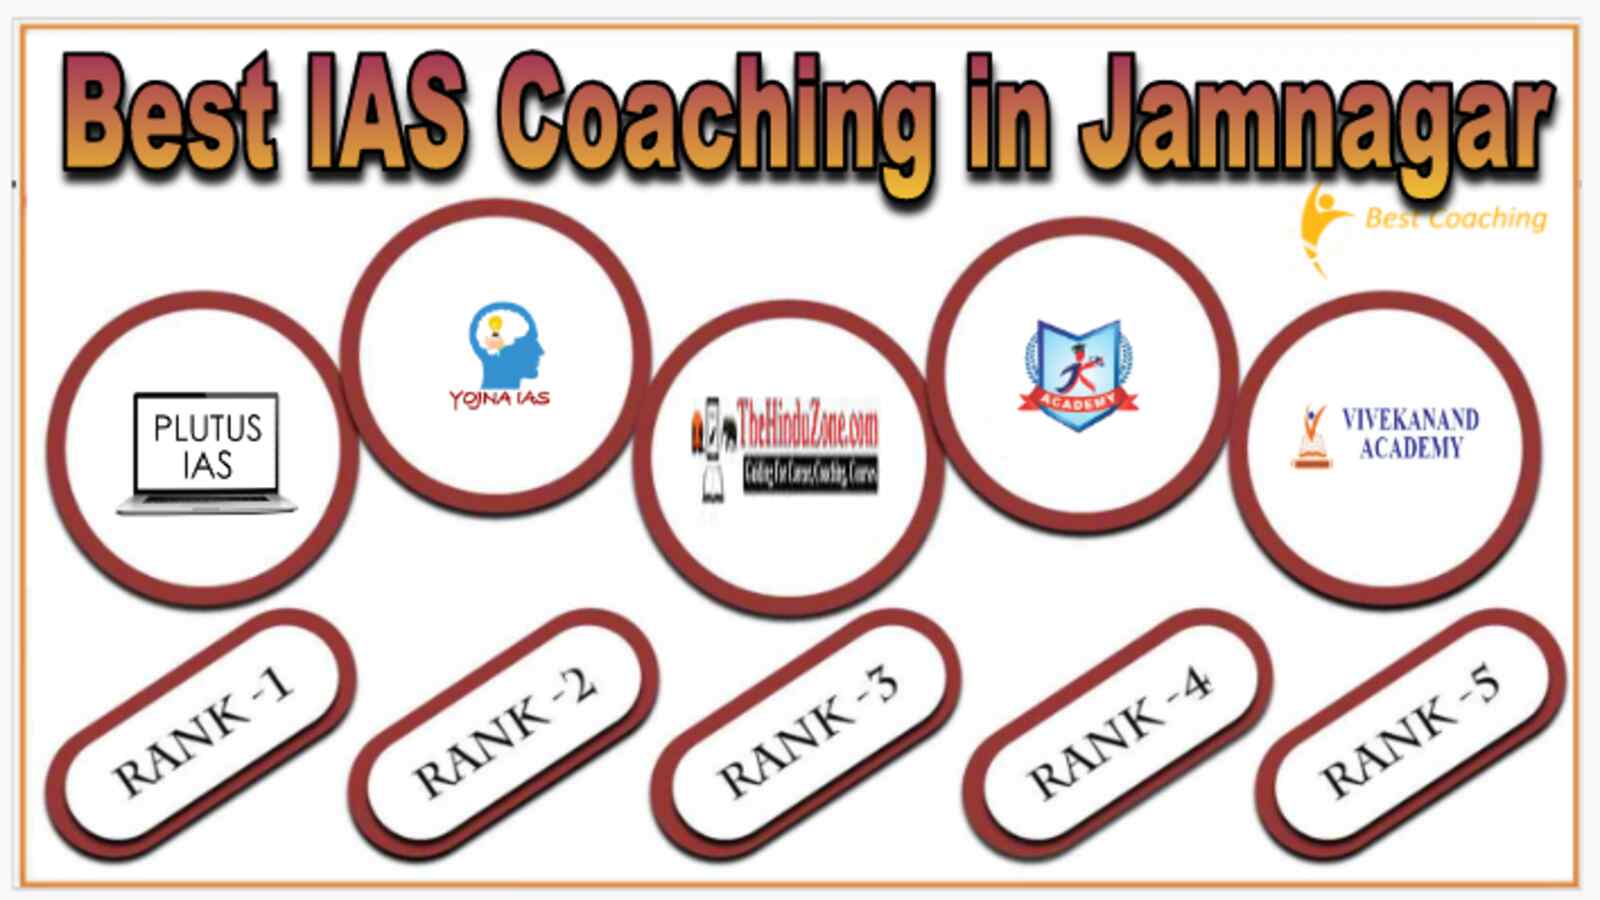 Best IAS Coaching in Jamnagar